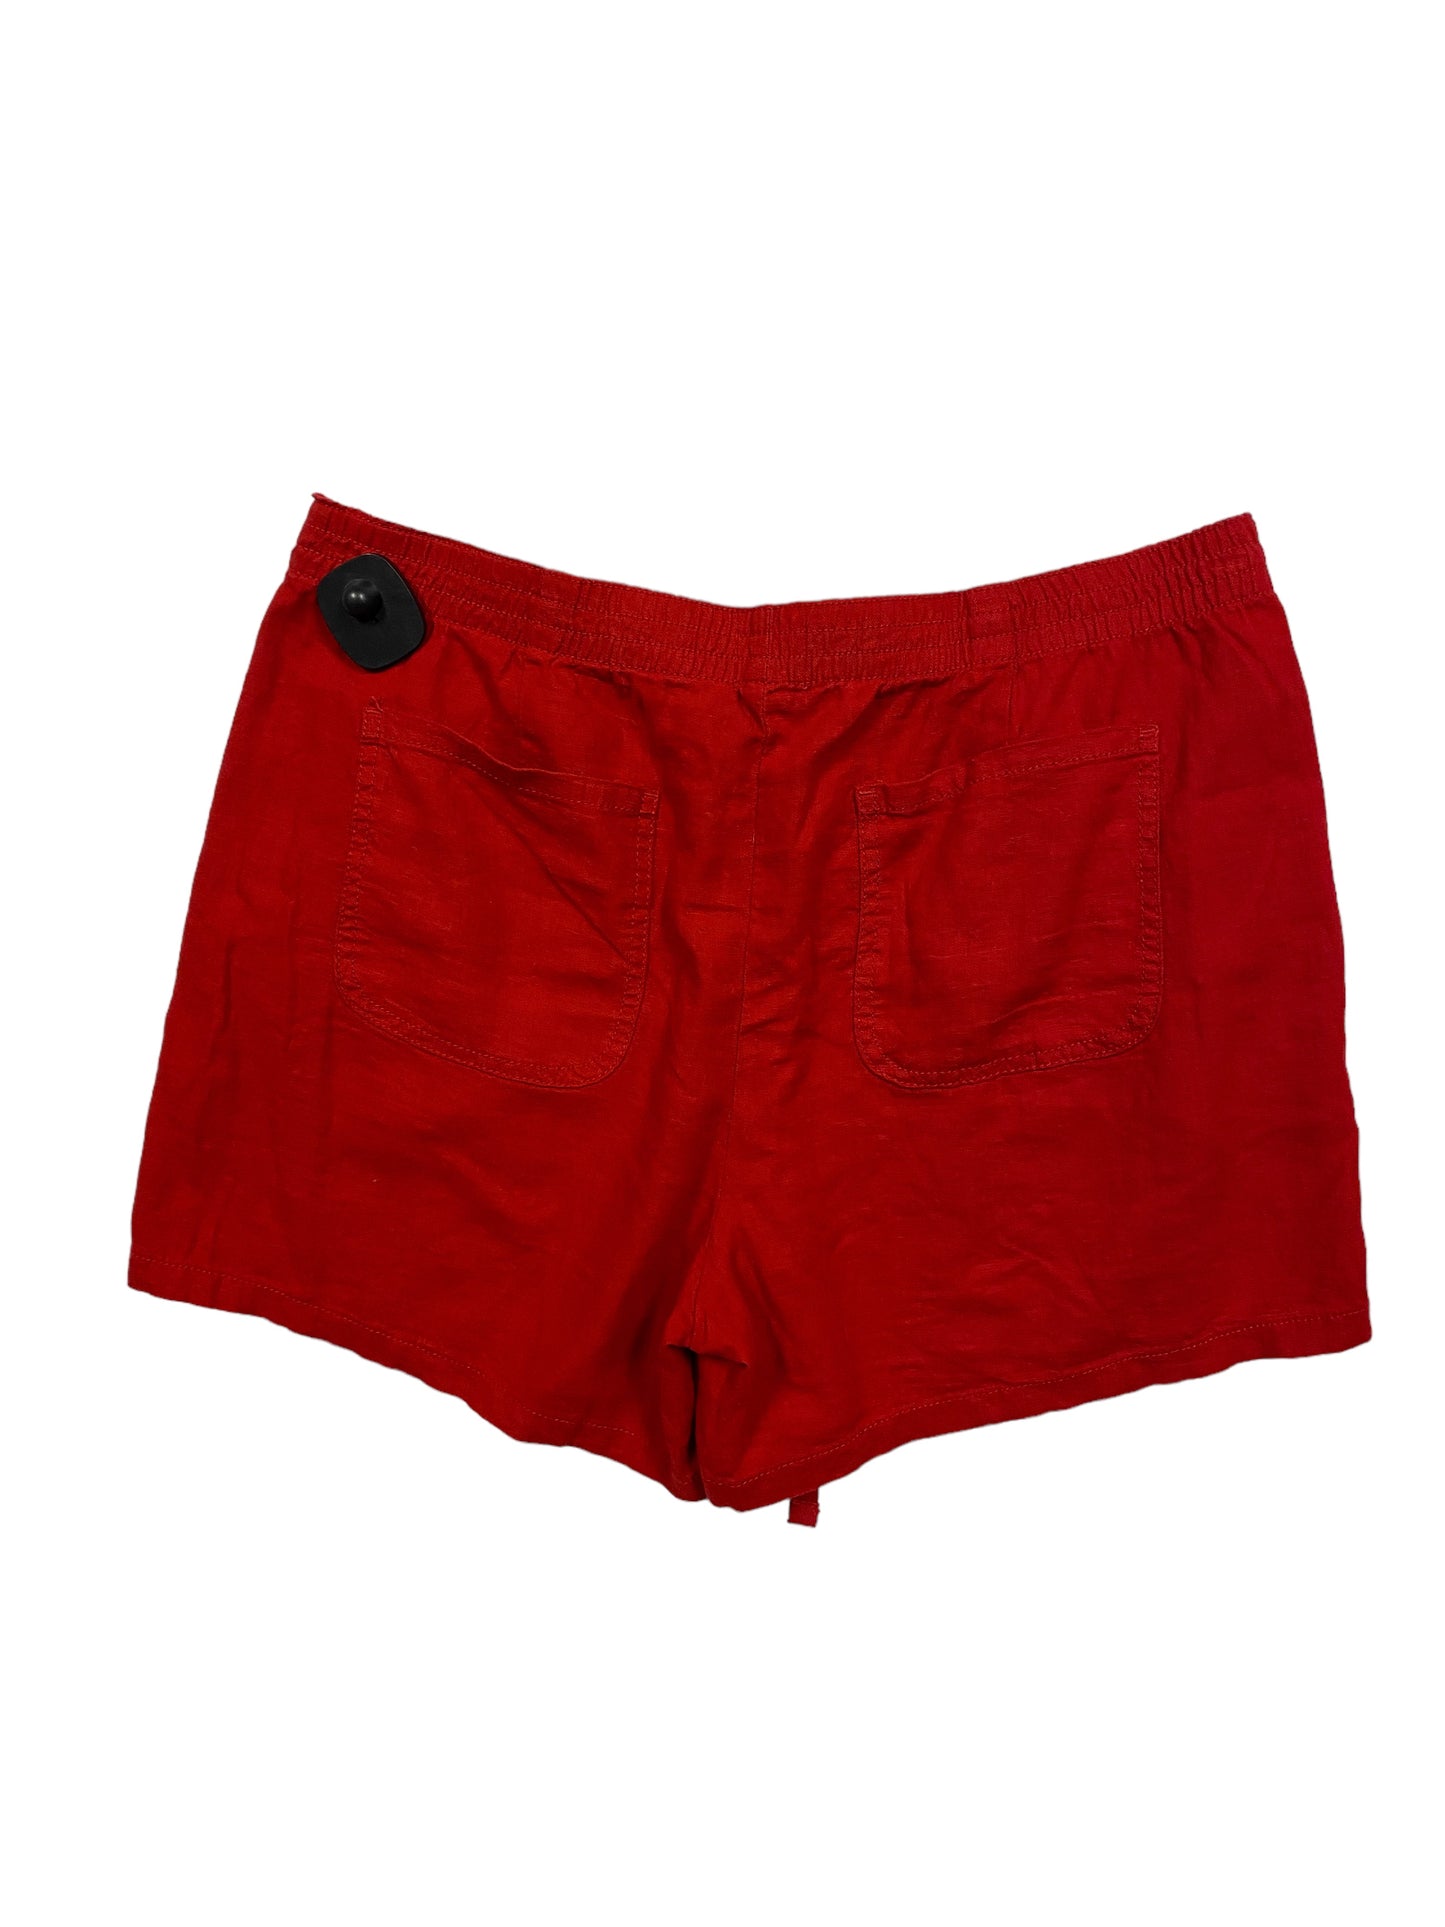 Shorts By St Johns Bay  Size: L